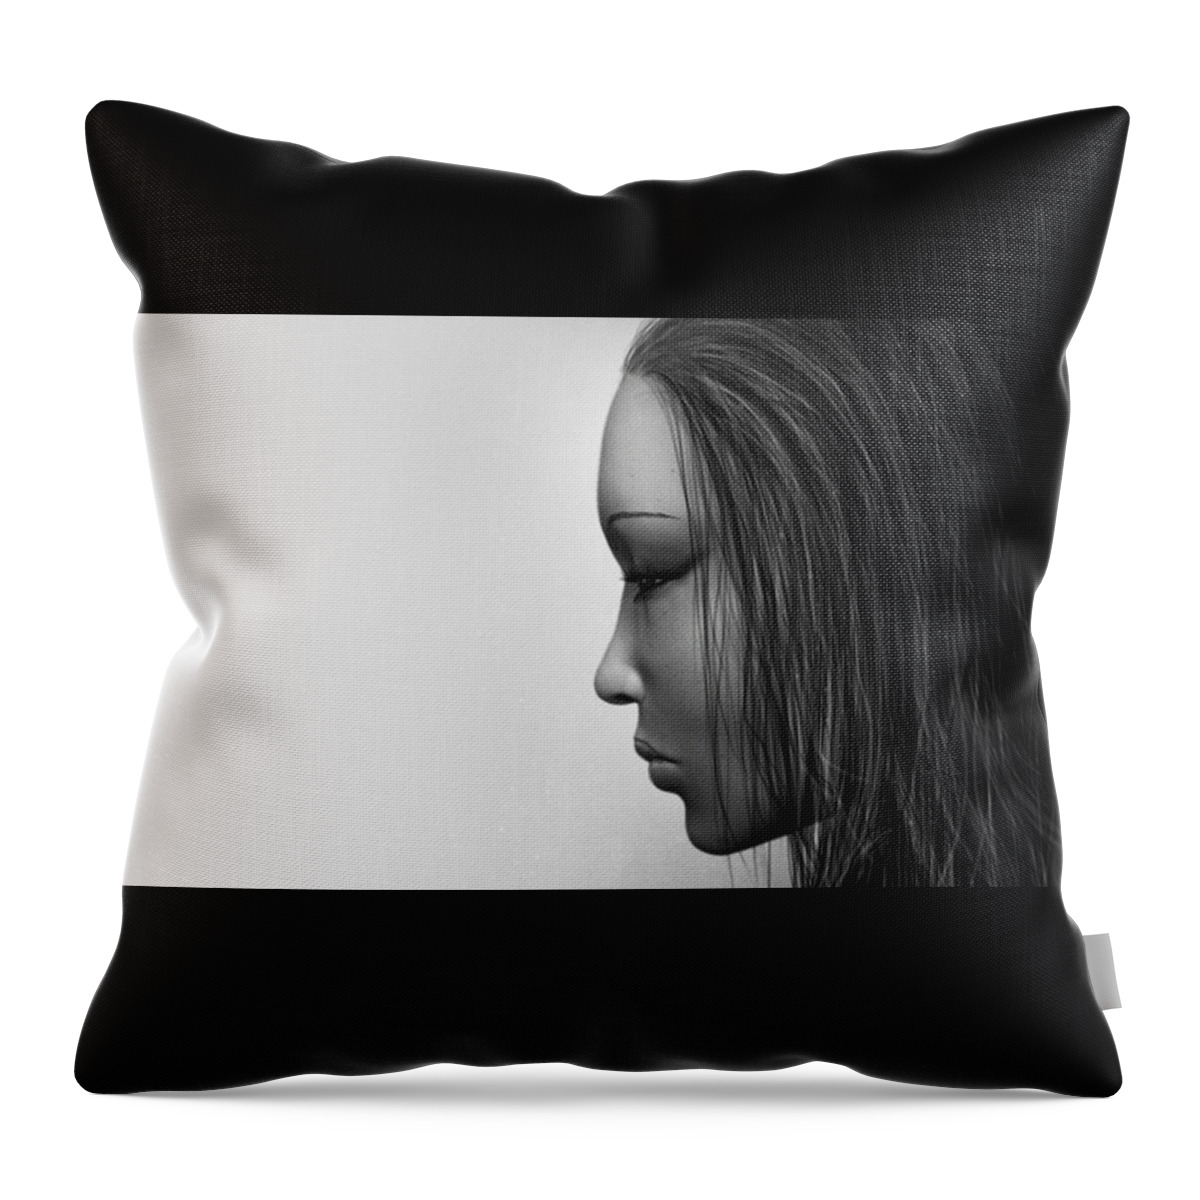 Women Throw Pillow featuring the digital art Women by Maye Loeser